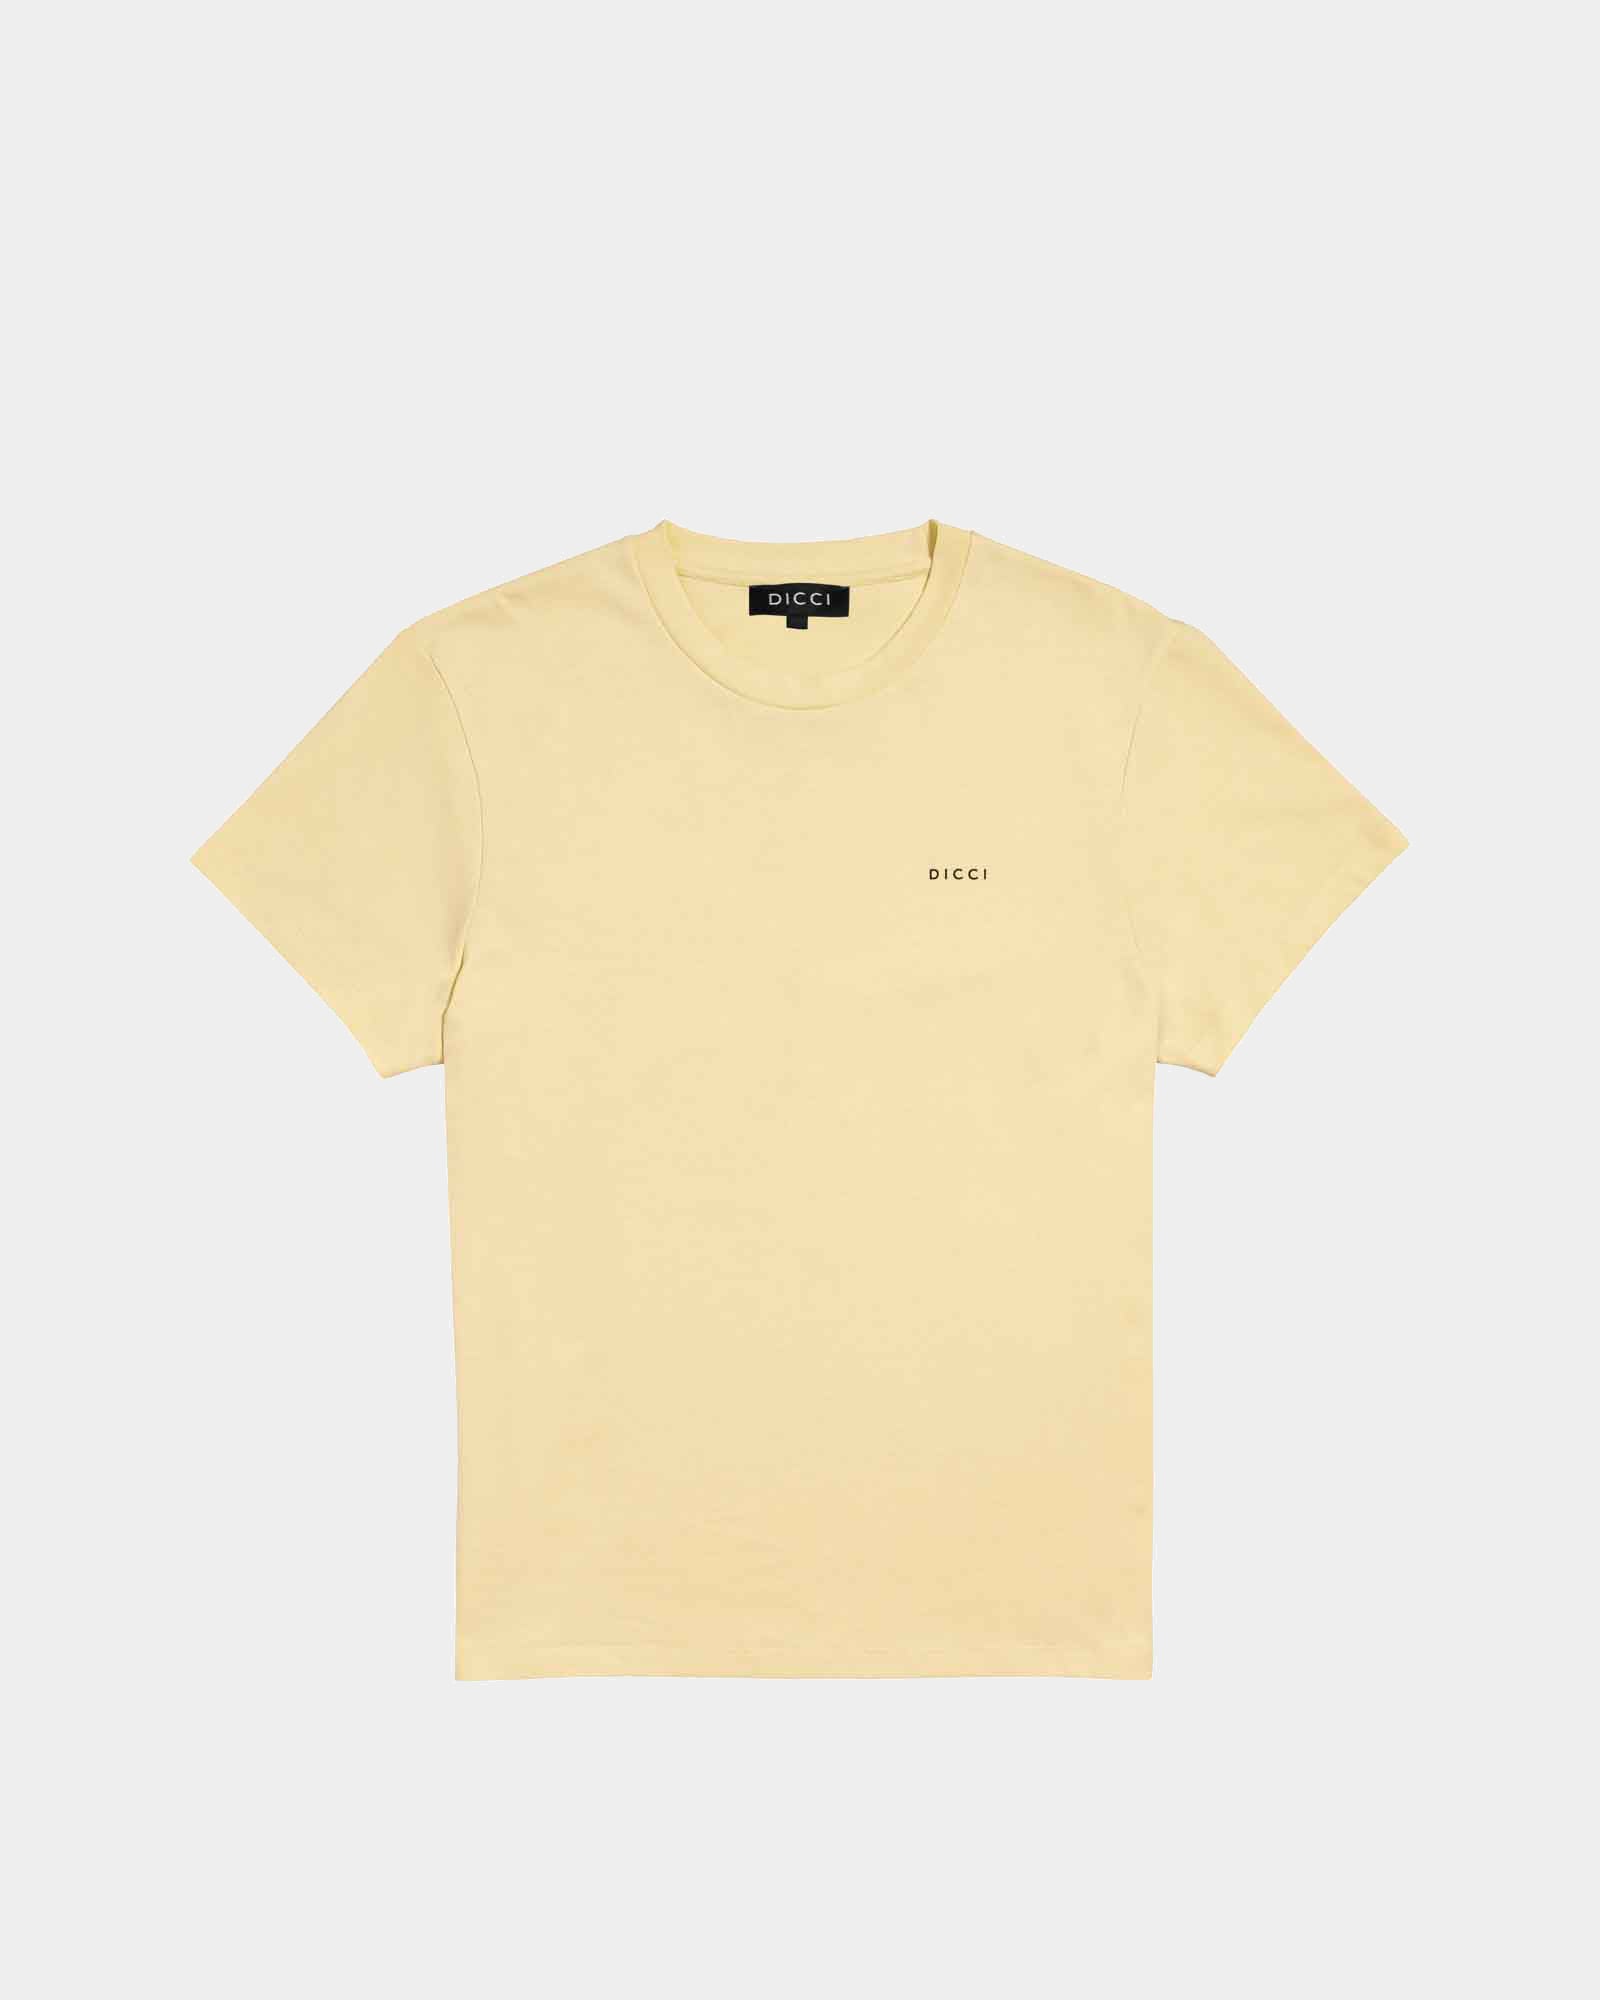 La Isla Bonita - Camiseta amarillo pastel 'La isla Bonita' - 100% algodón - Ropa Unisexo Online - Dicci